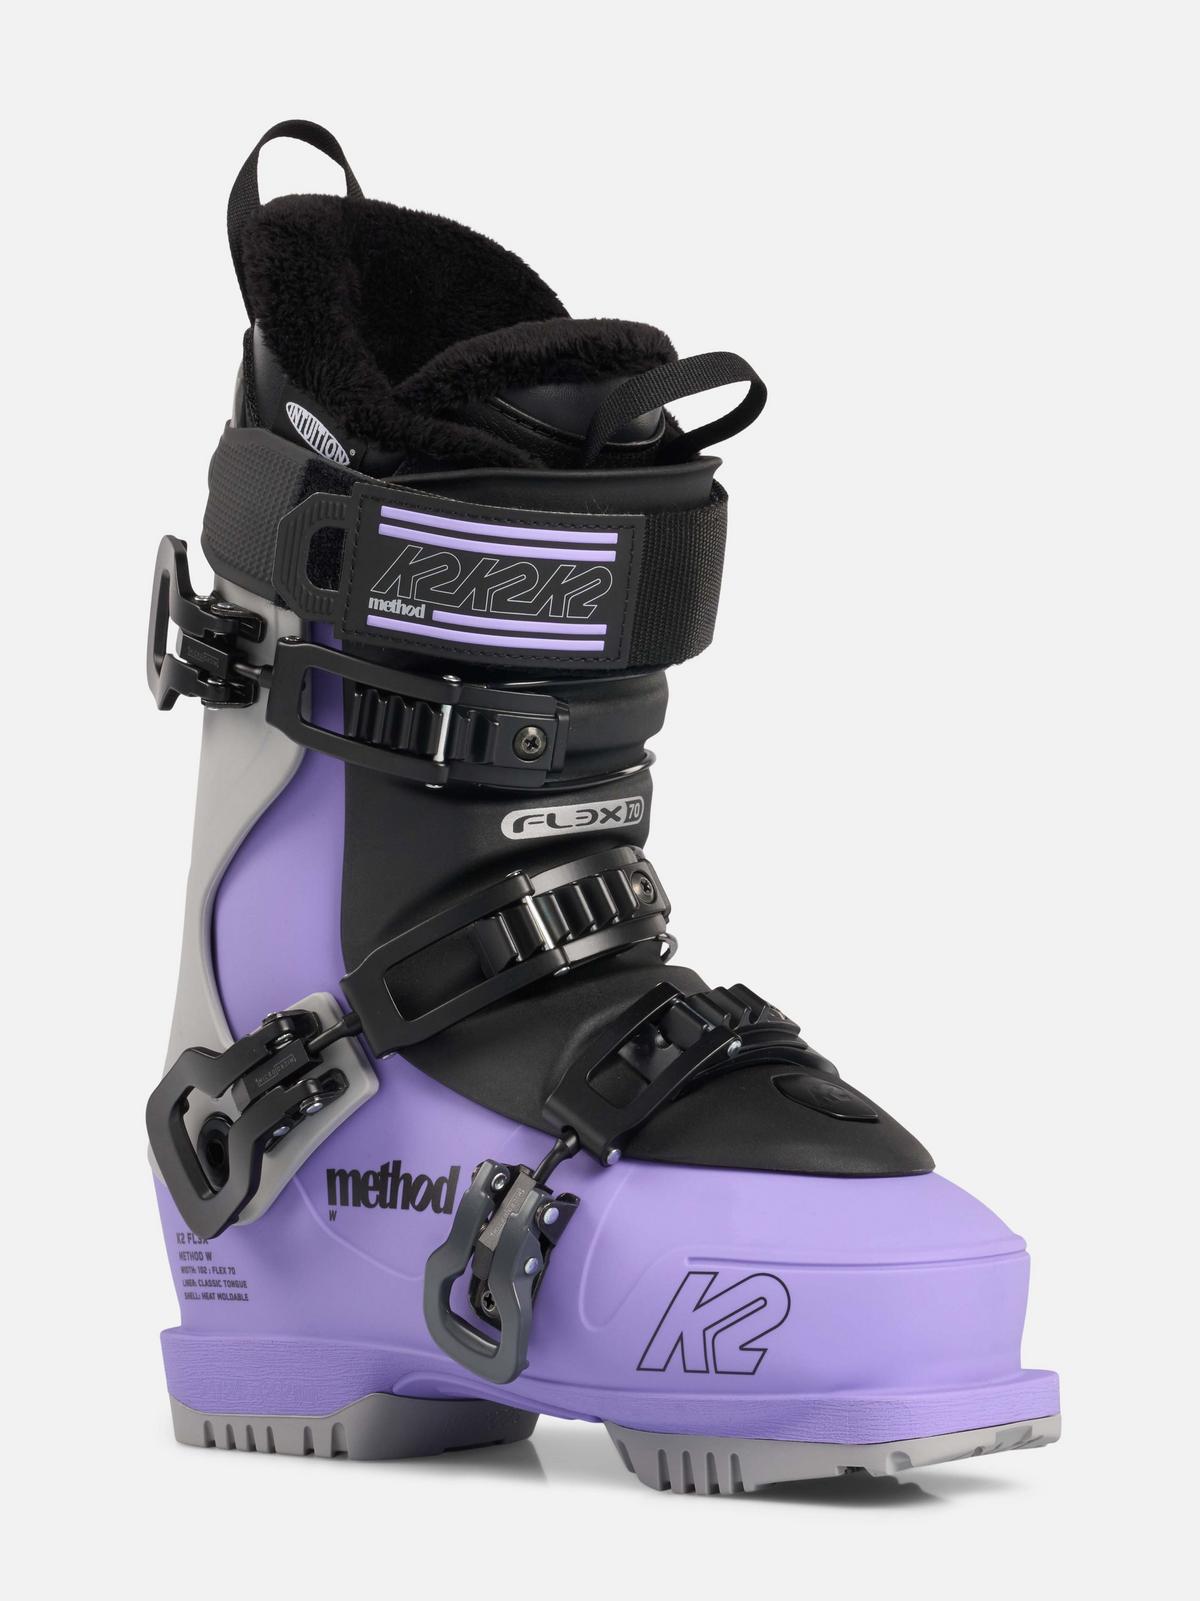 pegs indgang af K2 Method Women's Ski Boots 2023 | K2 Skis and K2 Snowboarding